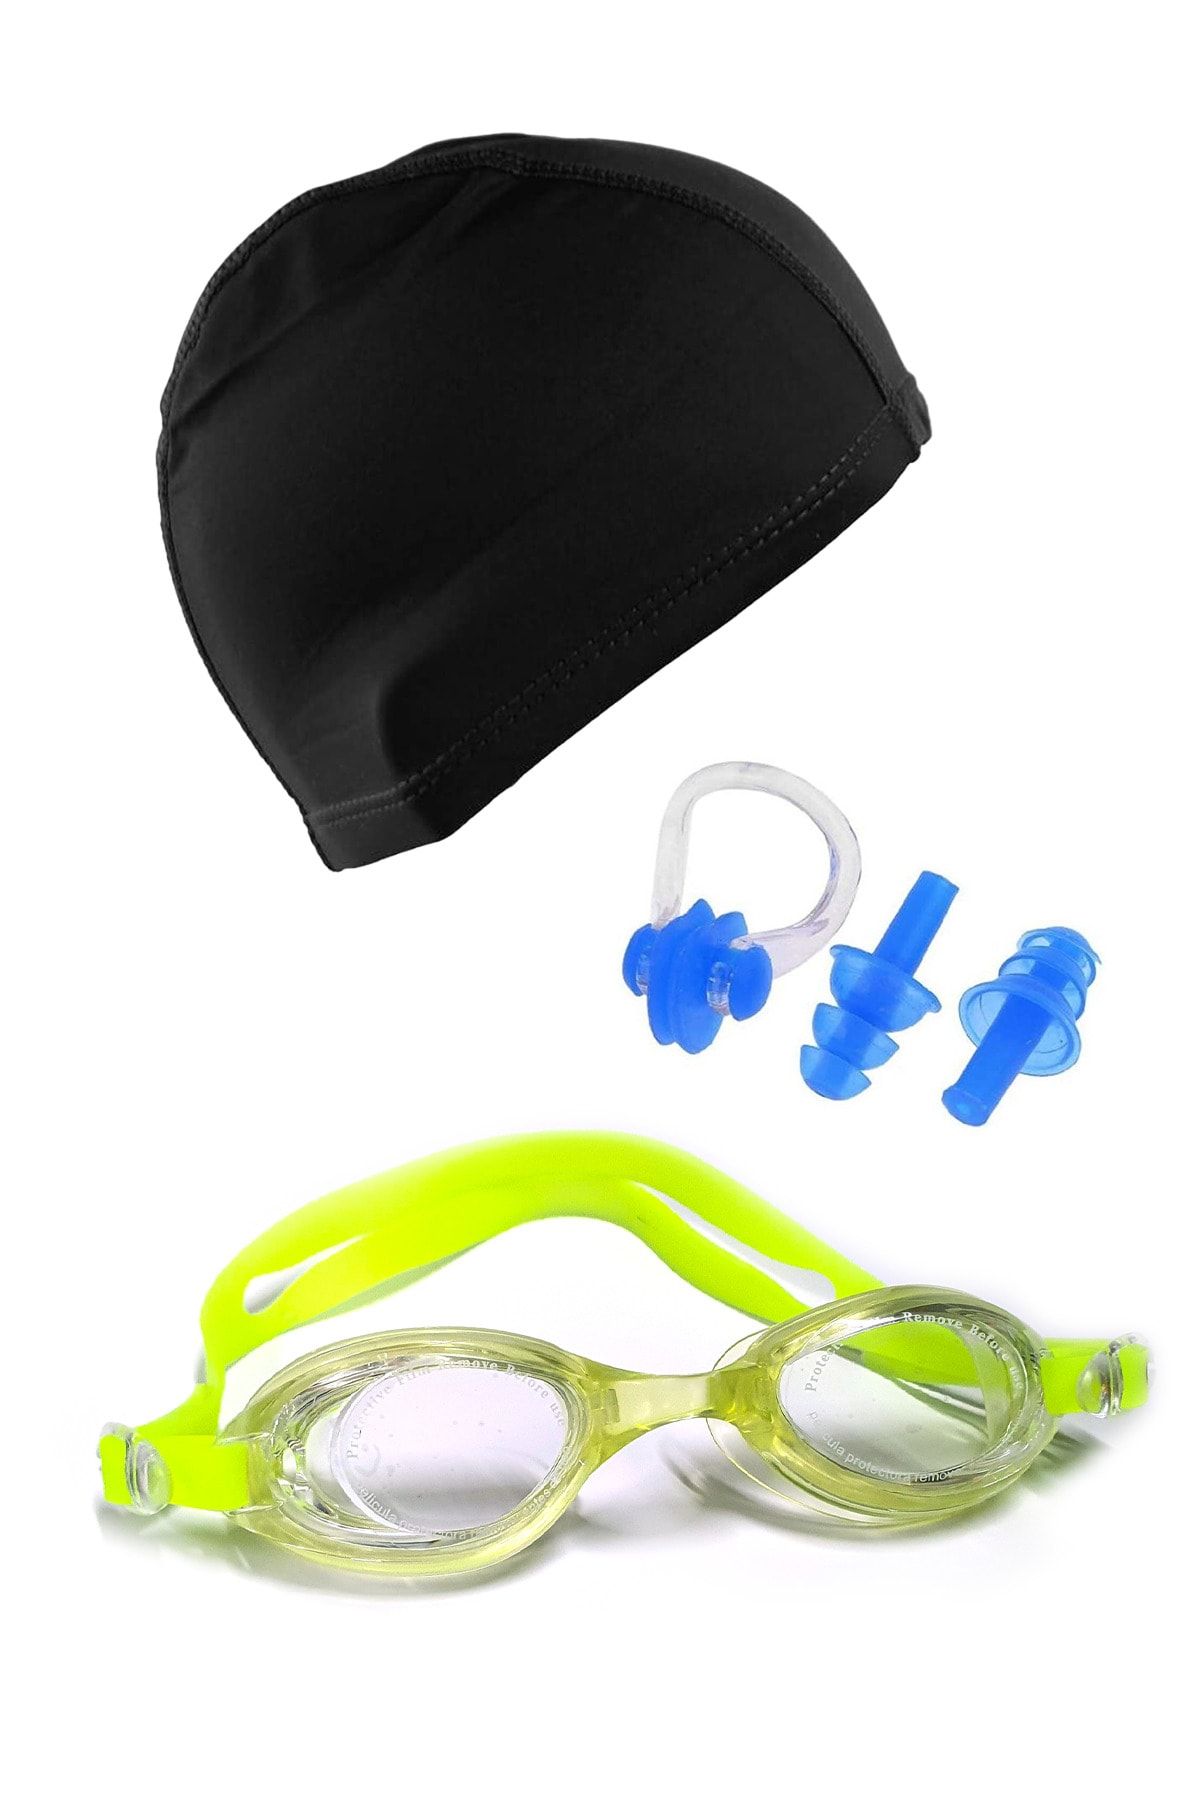 Tosima Silikon Çocuk Yüzücü Güzlüğü Ve Likra Yüzücü Bonesi Kulak Tıkacı Burun Klips Seti Full Set